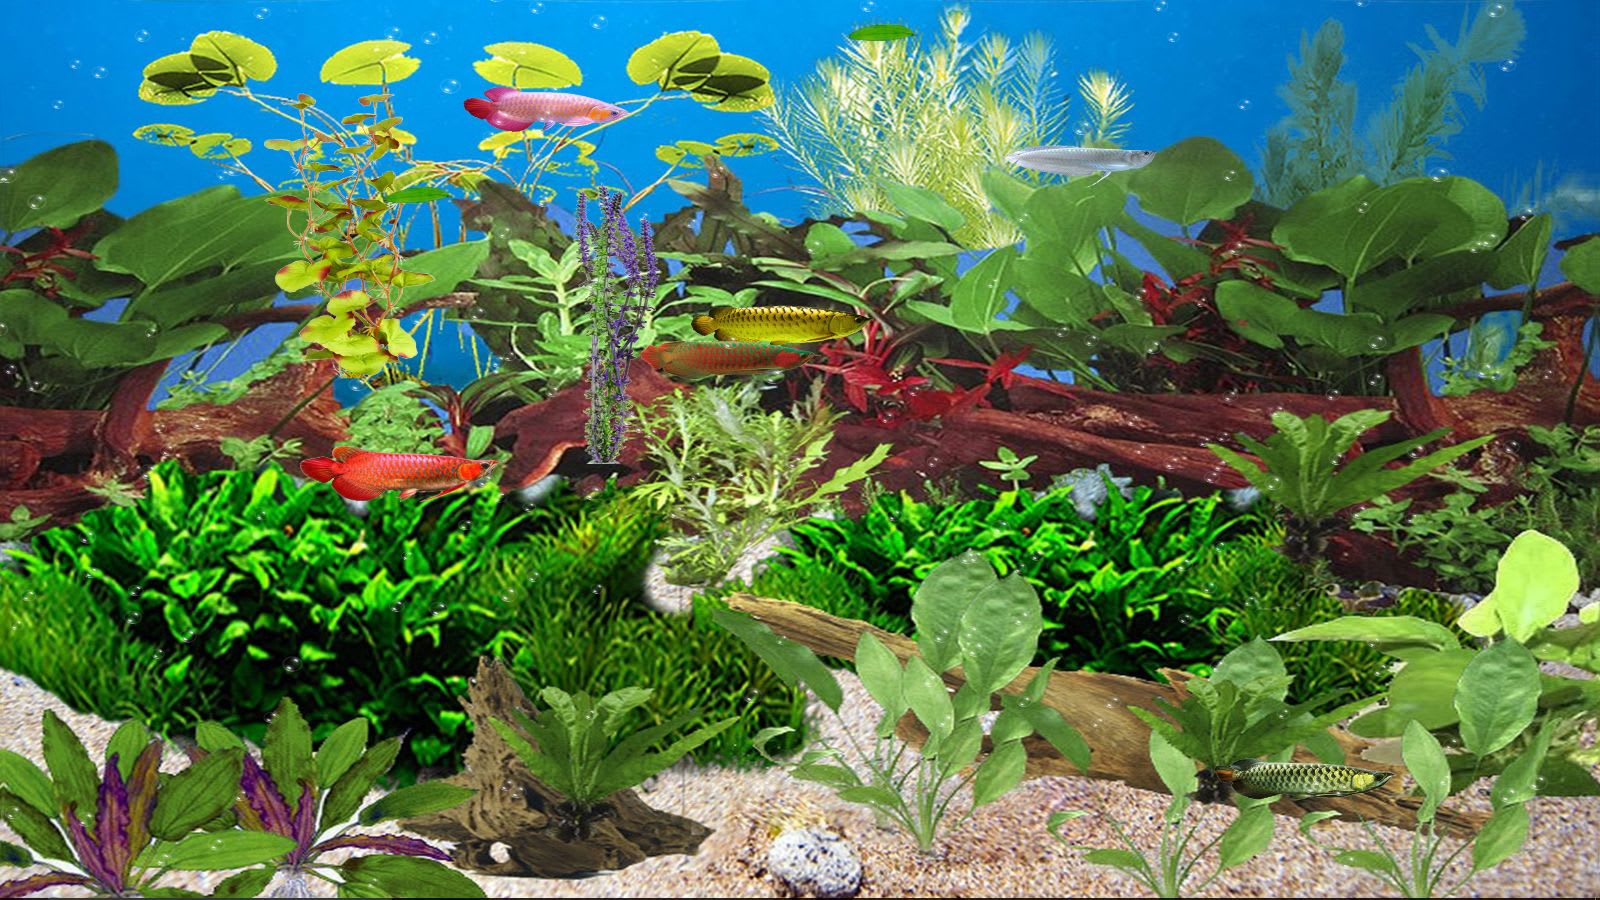 Aquarium Animated Wallpaper Download